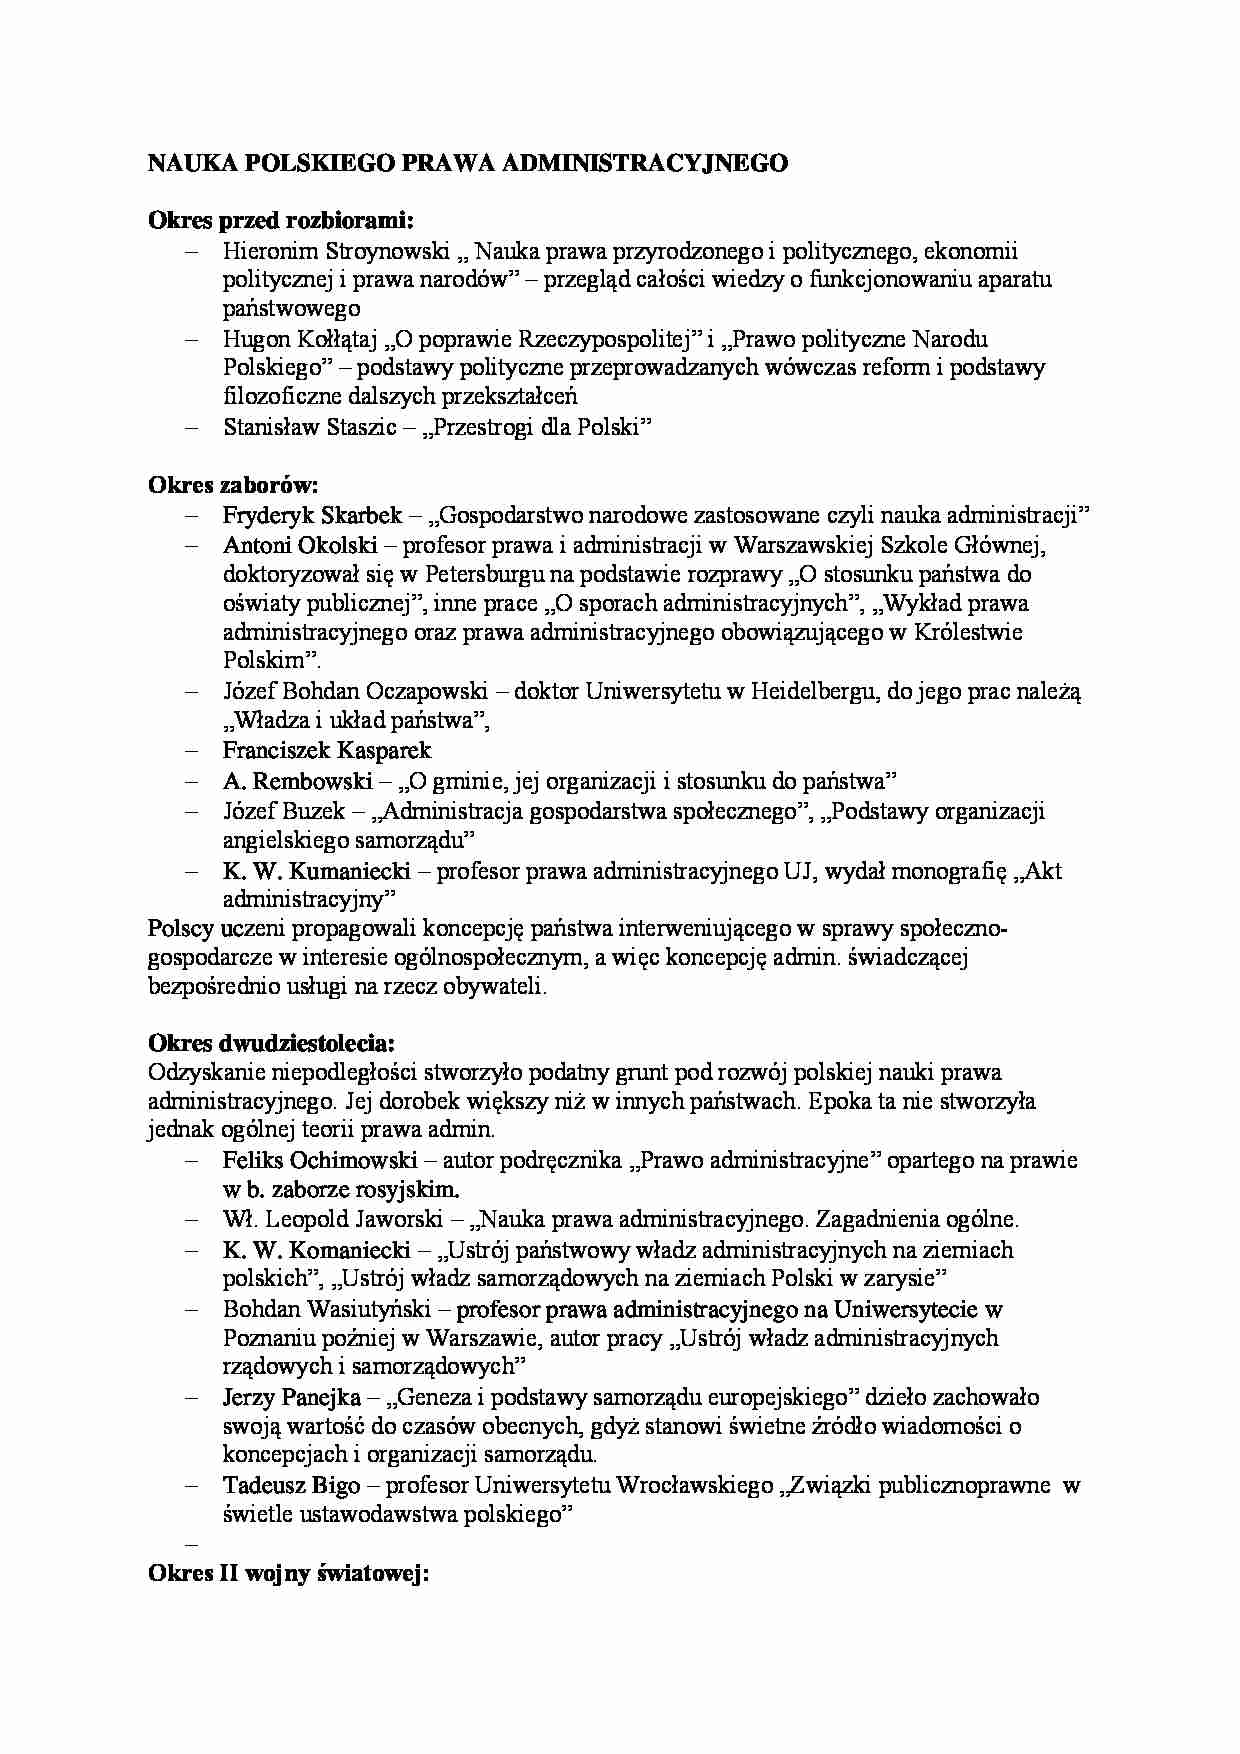 Nauka polskiego prawa administracyjnego - Franciszek Kasparek - strona 1